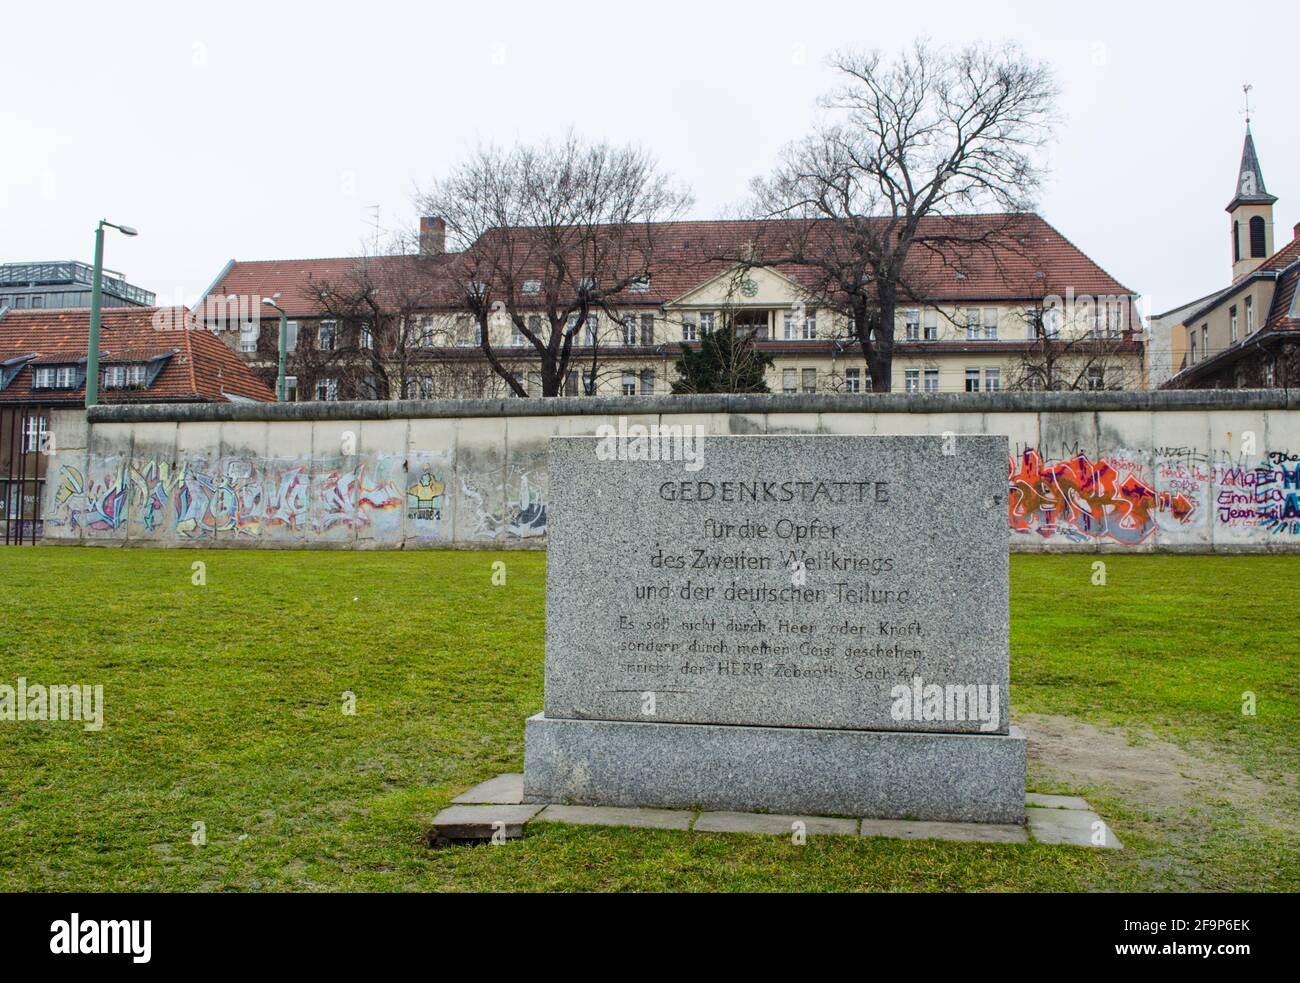 gedankstatte berliner mauer est un monument commémoratif construit sur la place du mur de berlin qui montre aujourd'hui des vestiges de celui-ci, des photos de victimes tuées au cours de l'espace Banque D'Images